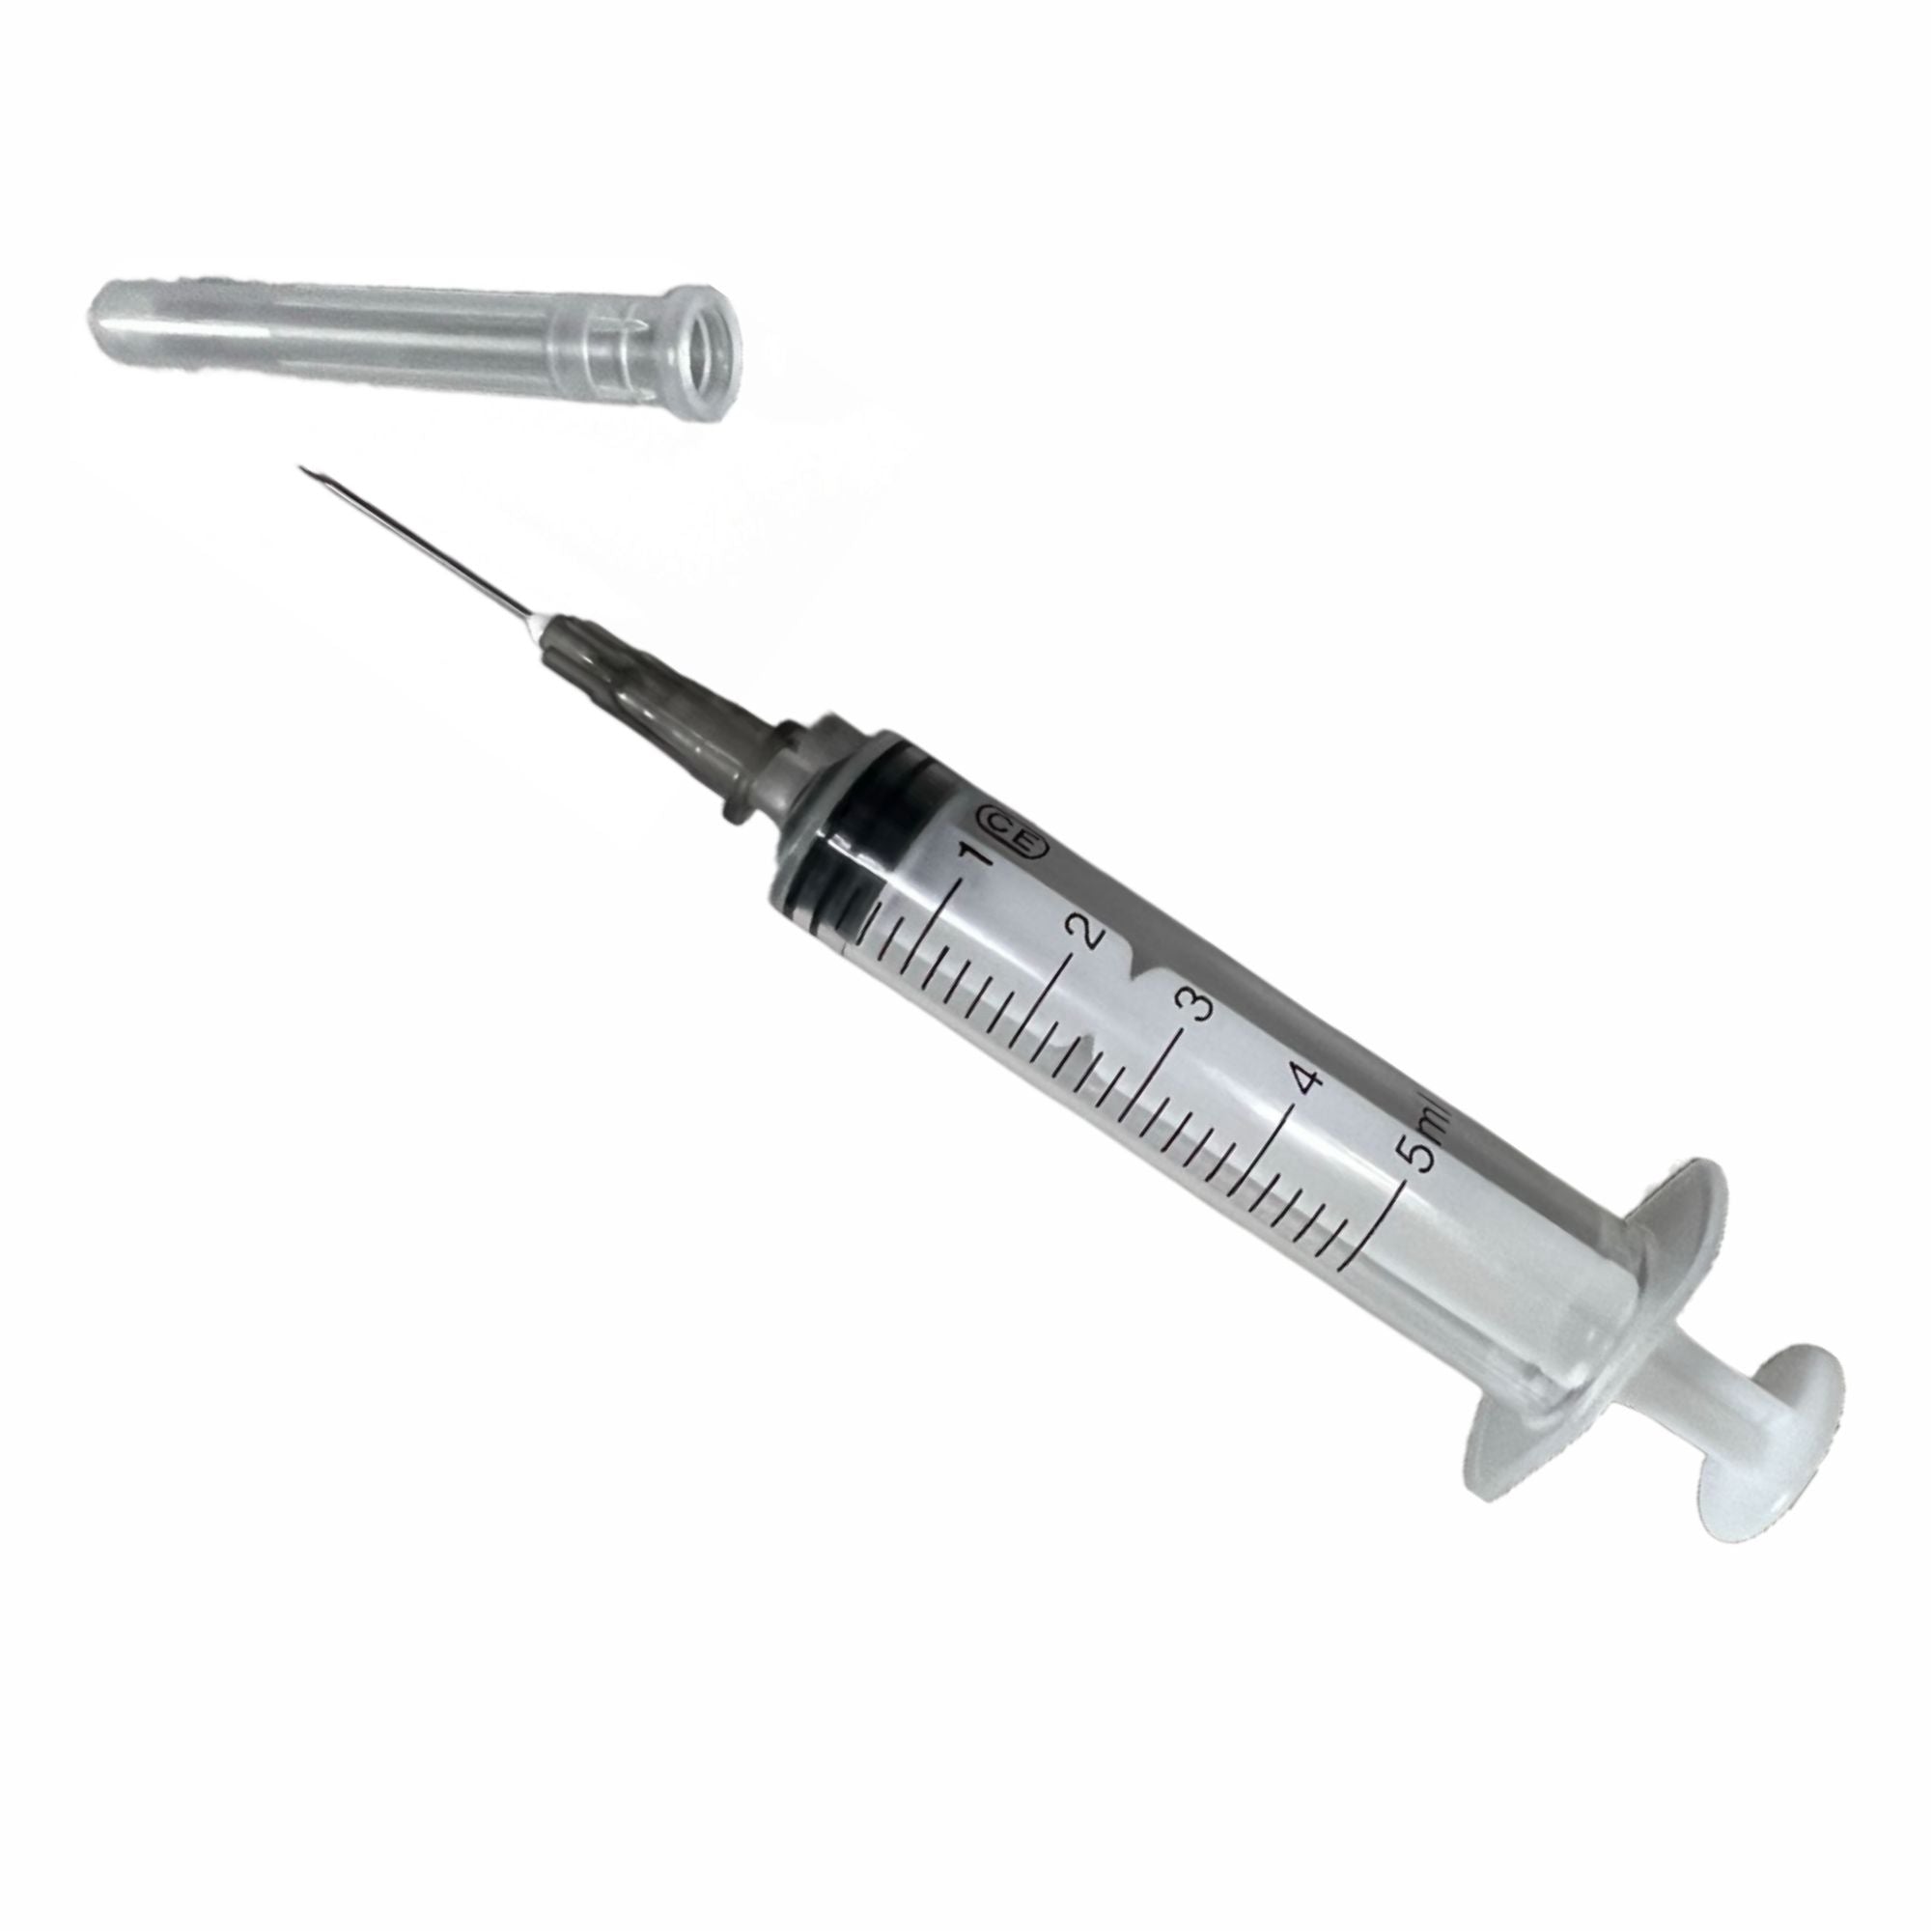 5ml Syringe - Parts